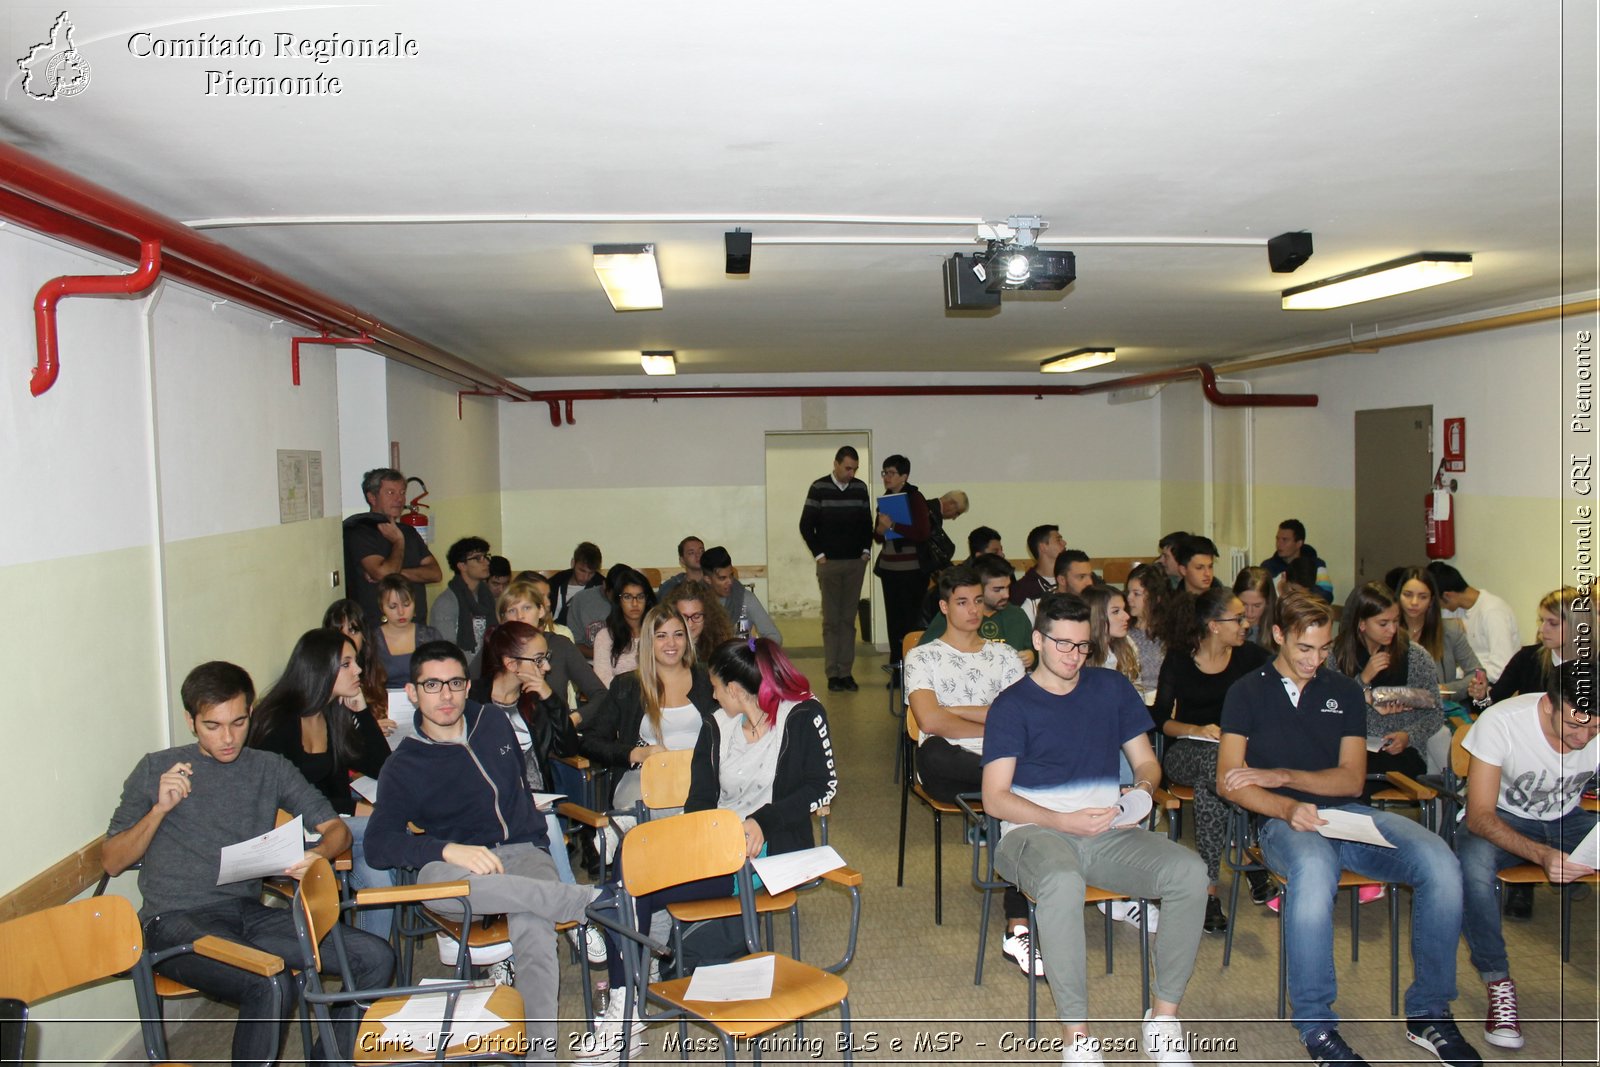 Ciri 17 Ottobre 2015 - Mass Training BLS e MSP - Croce Rossa Italiana- Comitato Regionale del Piemonte